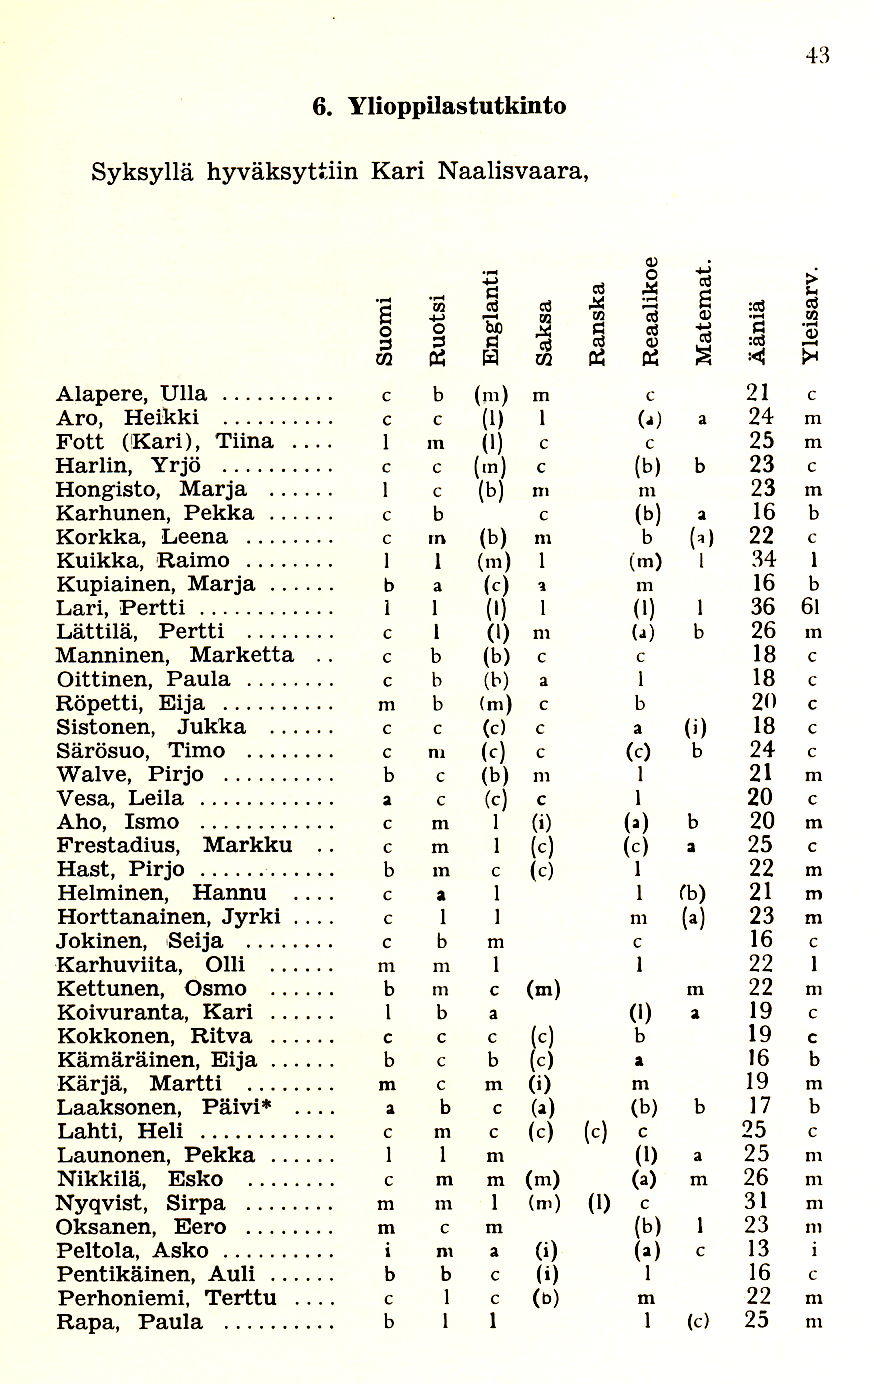 Oppilasluettelo 1970-71 sivu 11